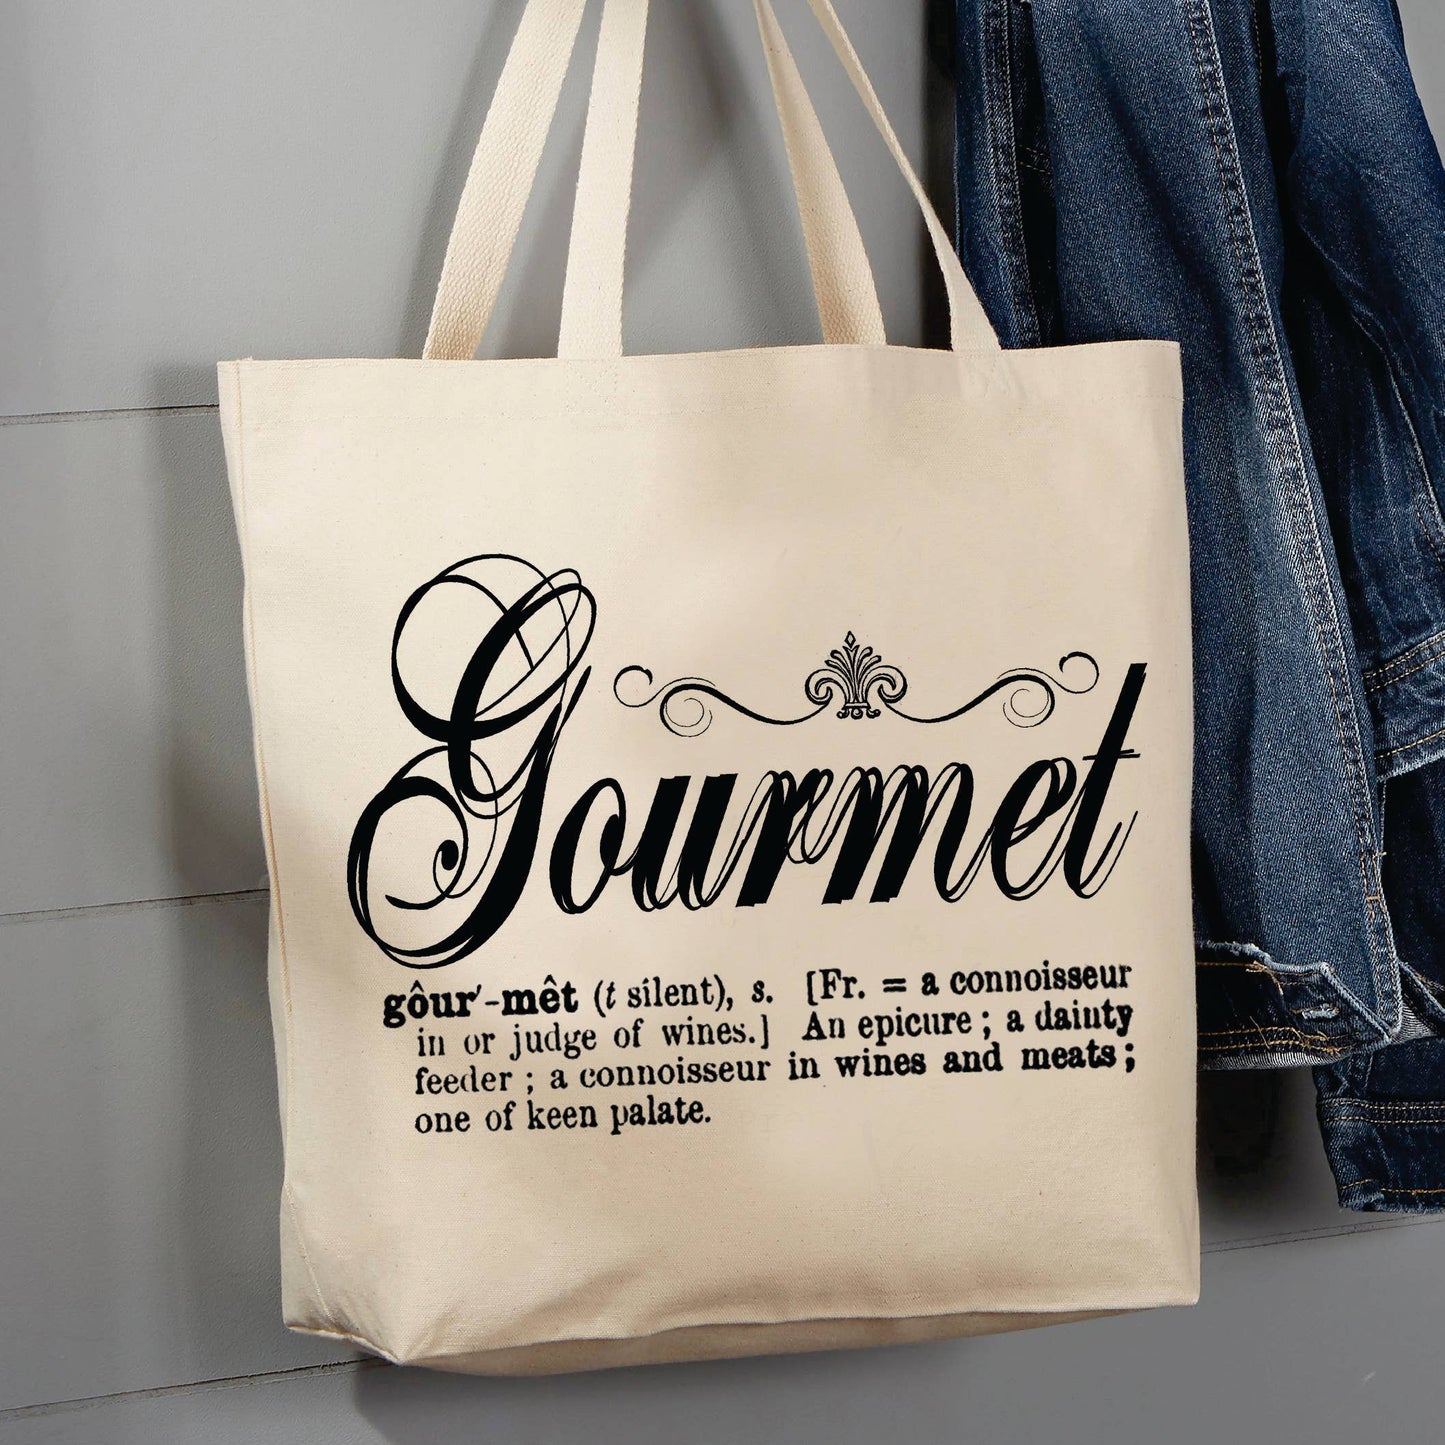 Gourmet, 12 oz  Tote Bag